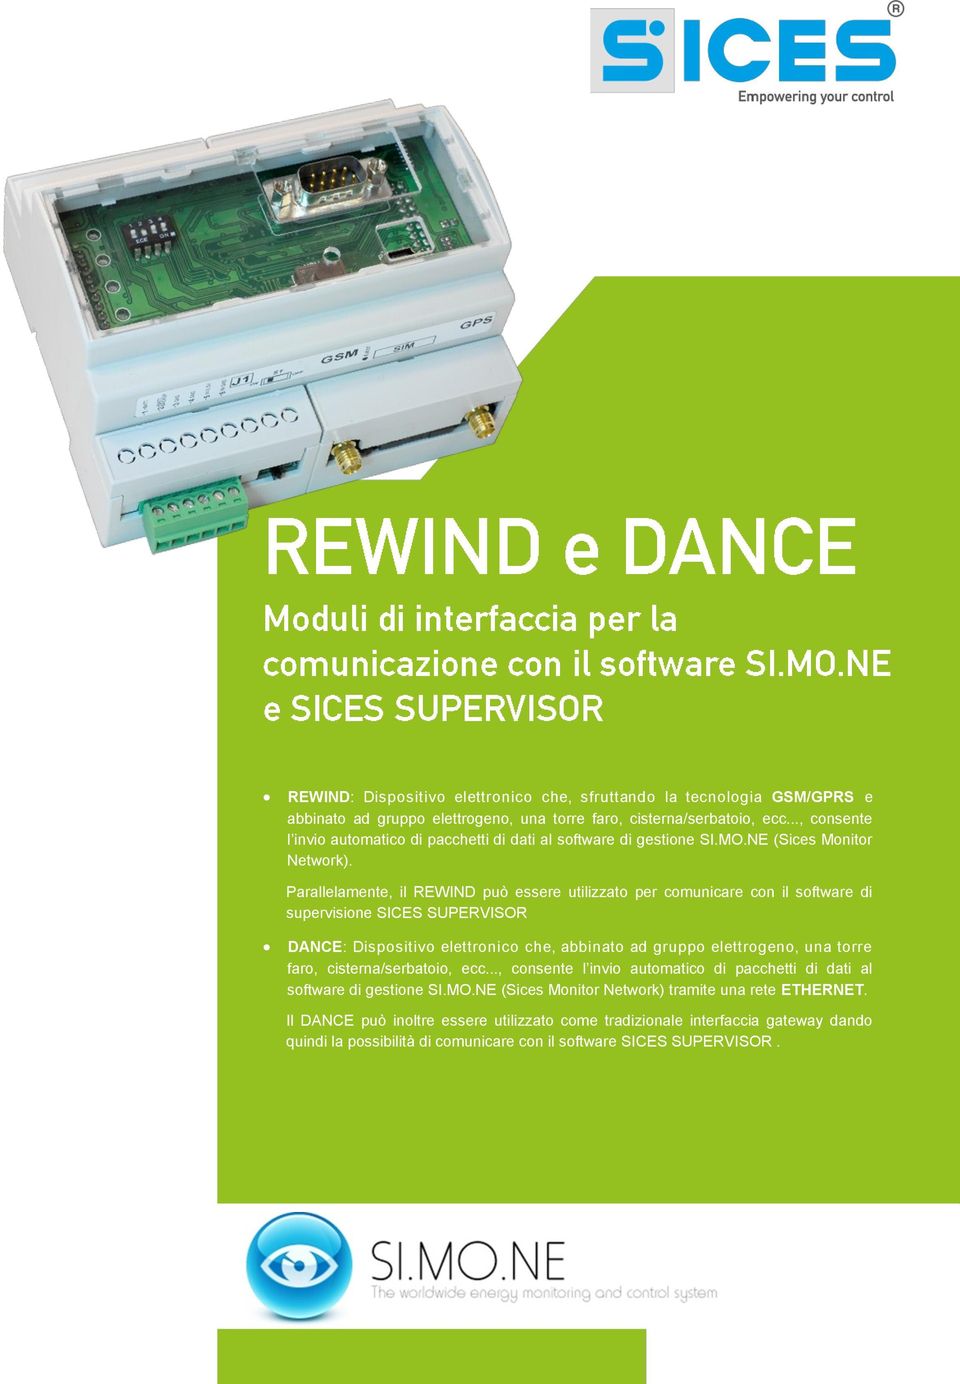 Parallelamente, il REWIND può essere utilizzato per comunicare con il software di supervisione SICES SUPERVISOR DANCE: Dispositivo elettronico che, abbinato ad gruppo elettrogeno, una torre